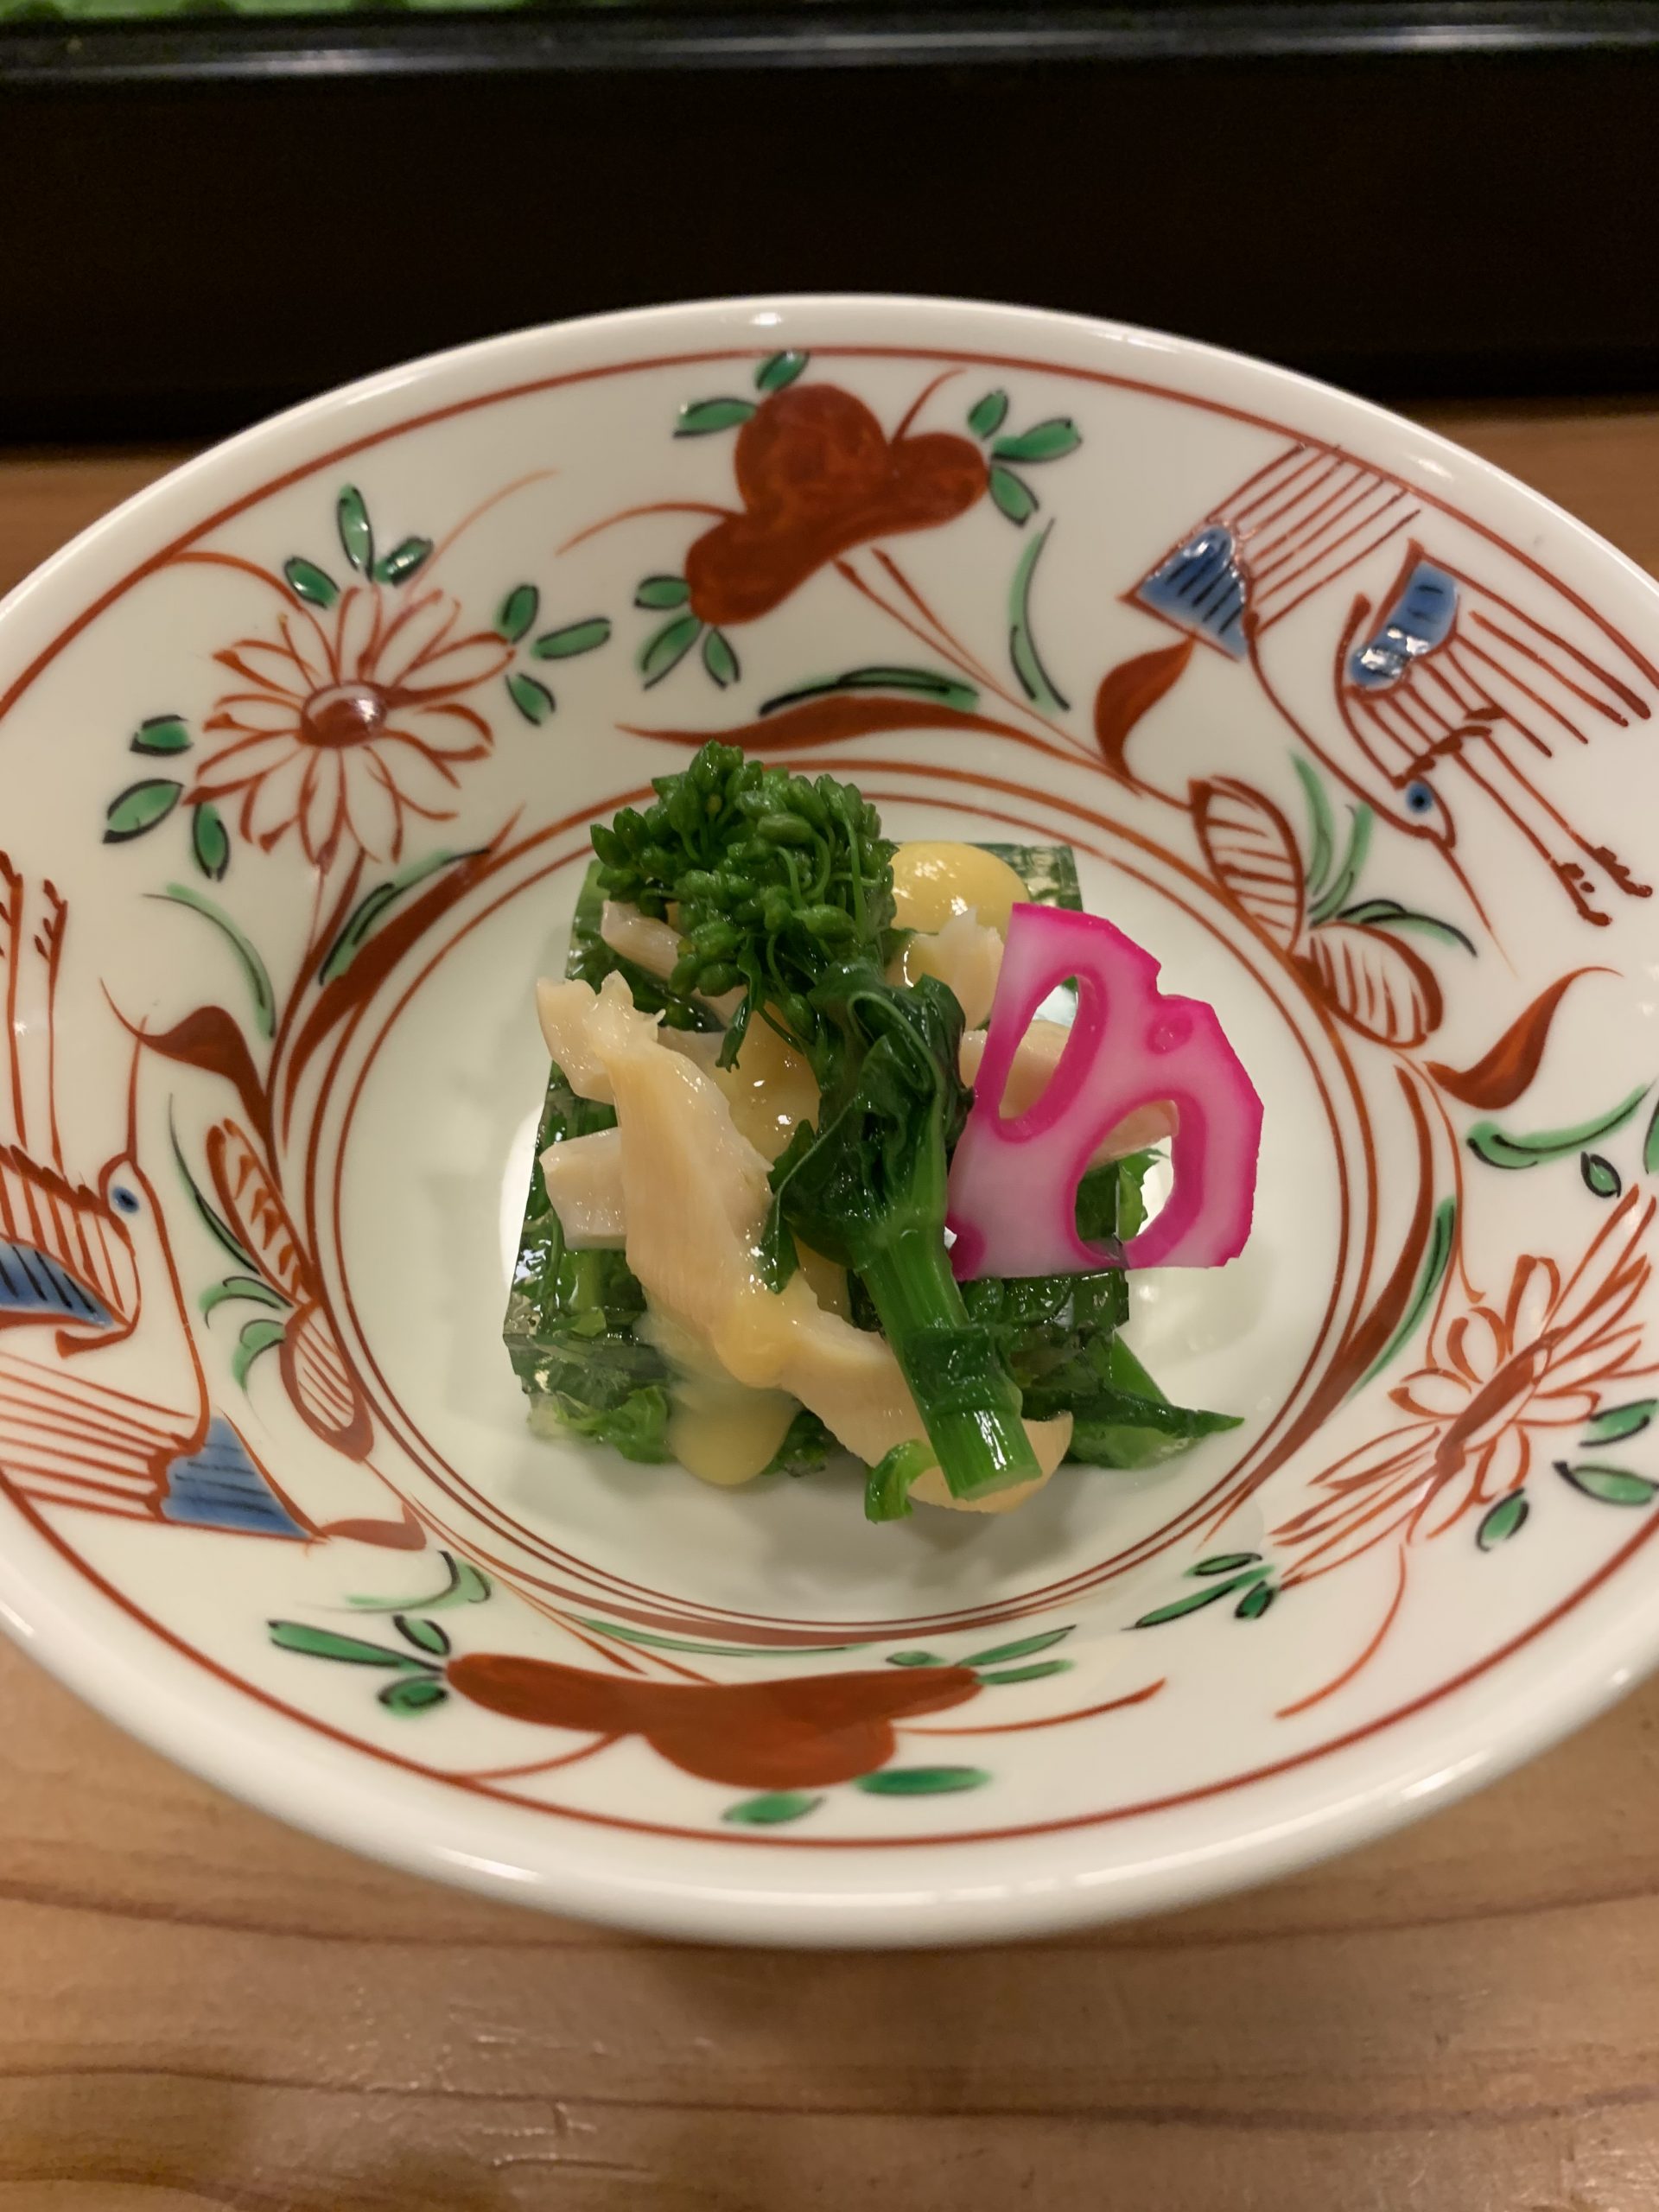 ミル貝と菜の花のゼリーよせ 海の恵み 食の底力 Japan 公式レシピサイト